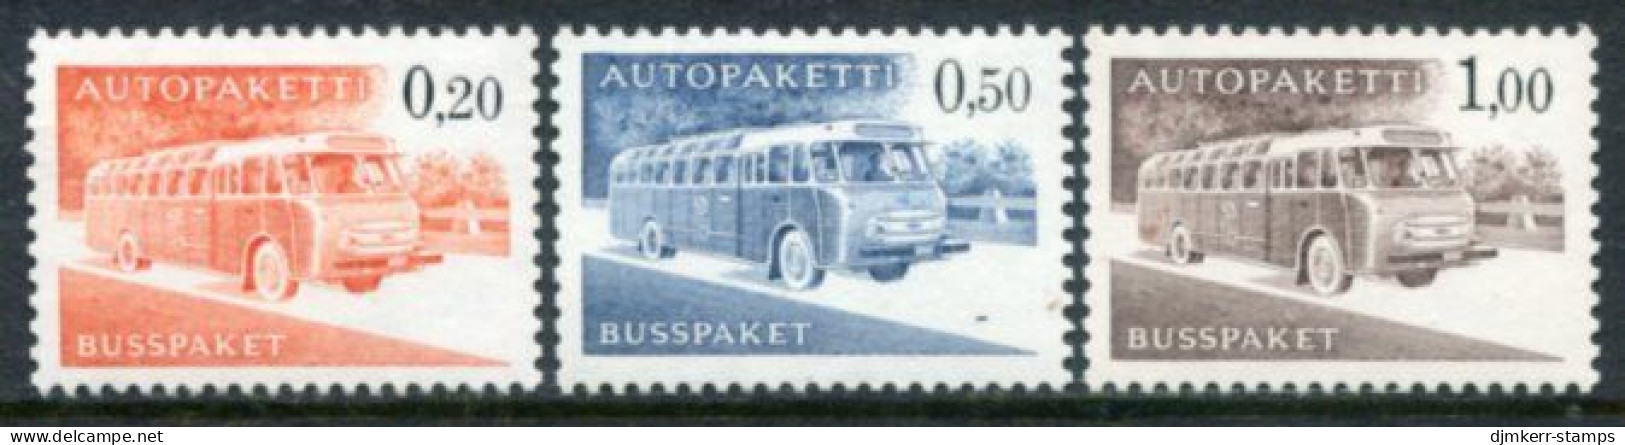 FINLAND 1963 Bus Parcel Set Of 3 On Phosphor Paper MNH / **.  Michel 11y-13y - Postbuspakete